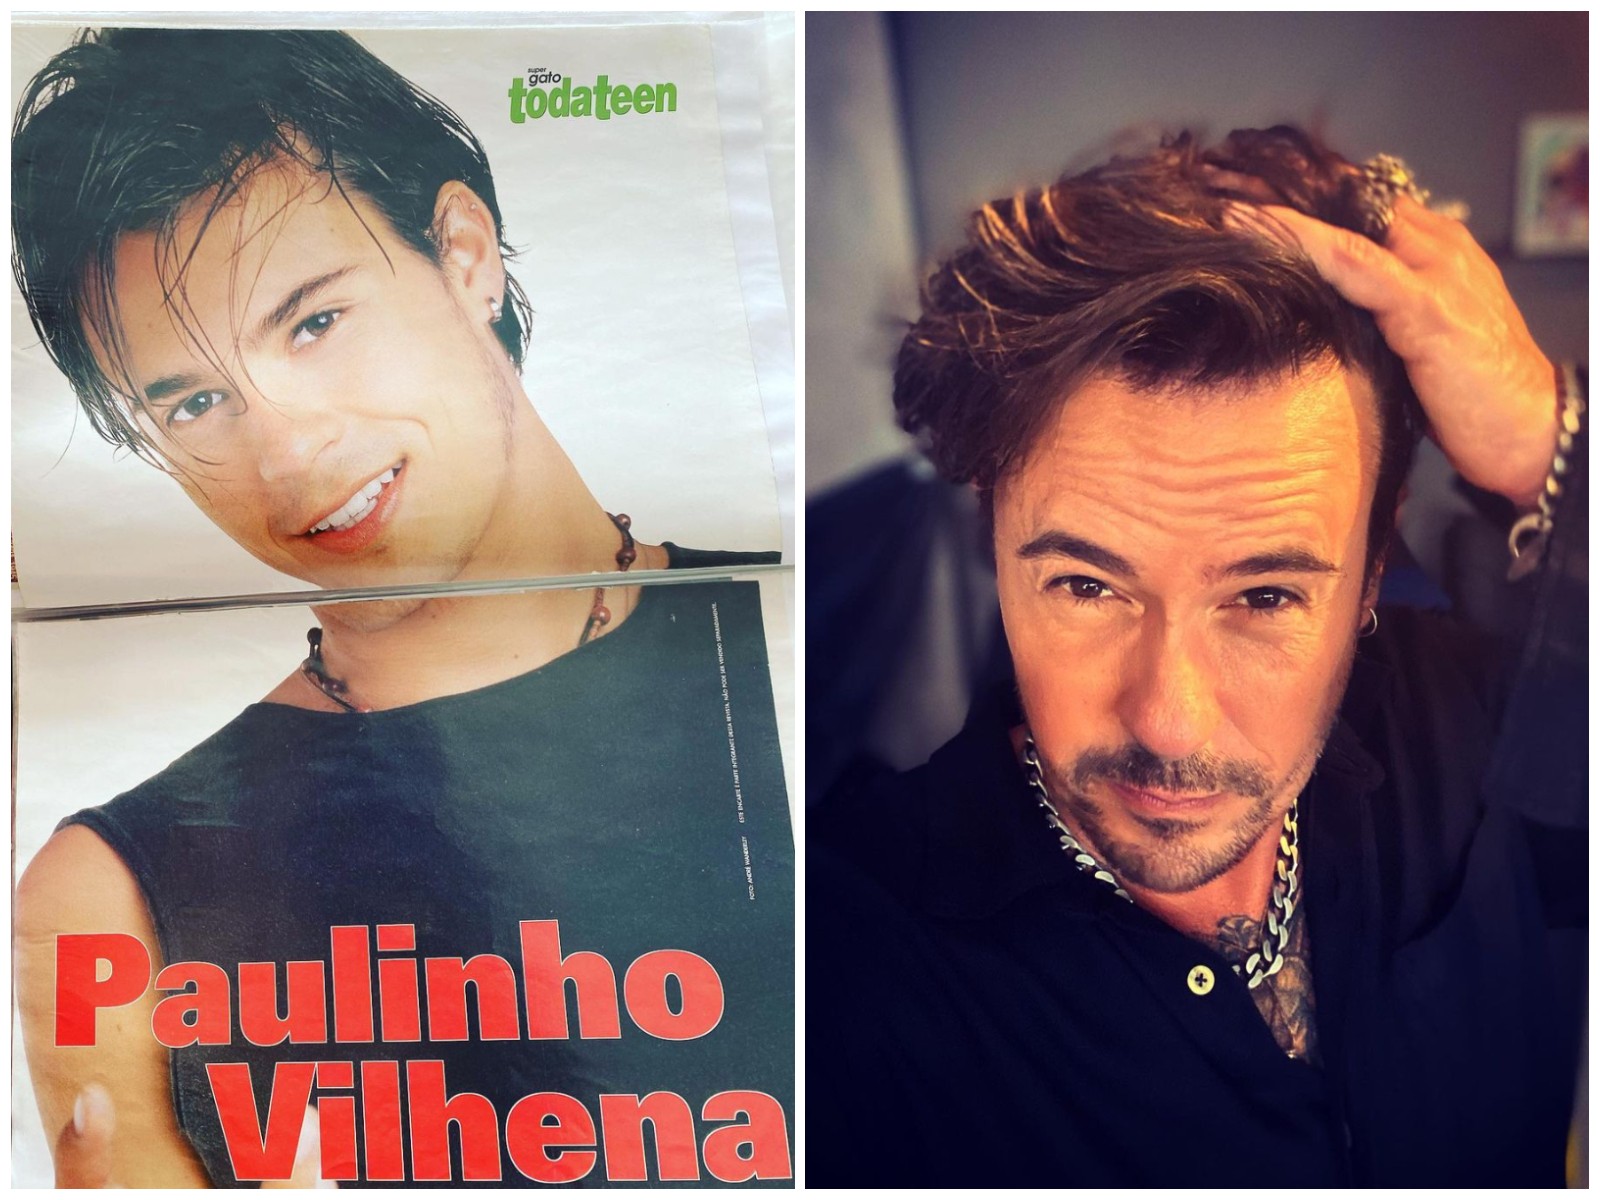 Paulinho Vilhena, à esquerda, na época de galã adolescente e, à direita, atualmente (Foto: Reprodução/Instagram)